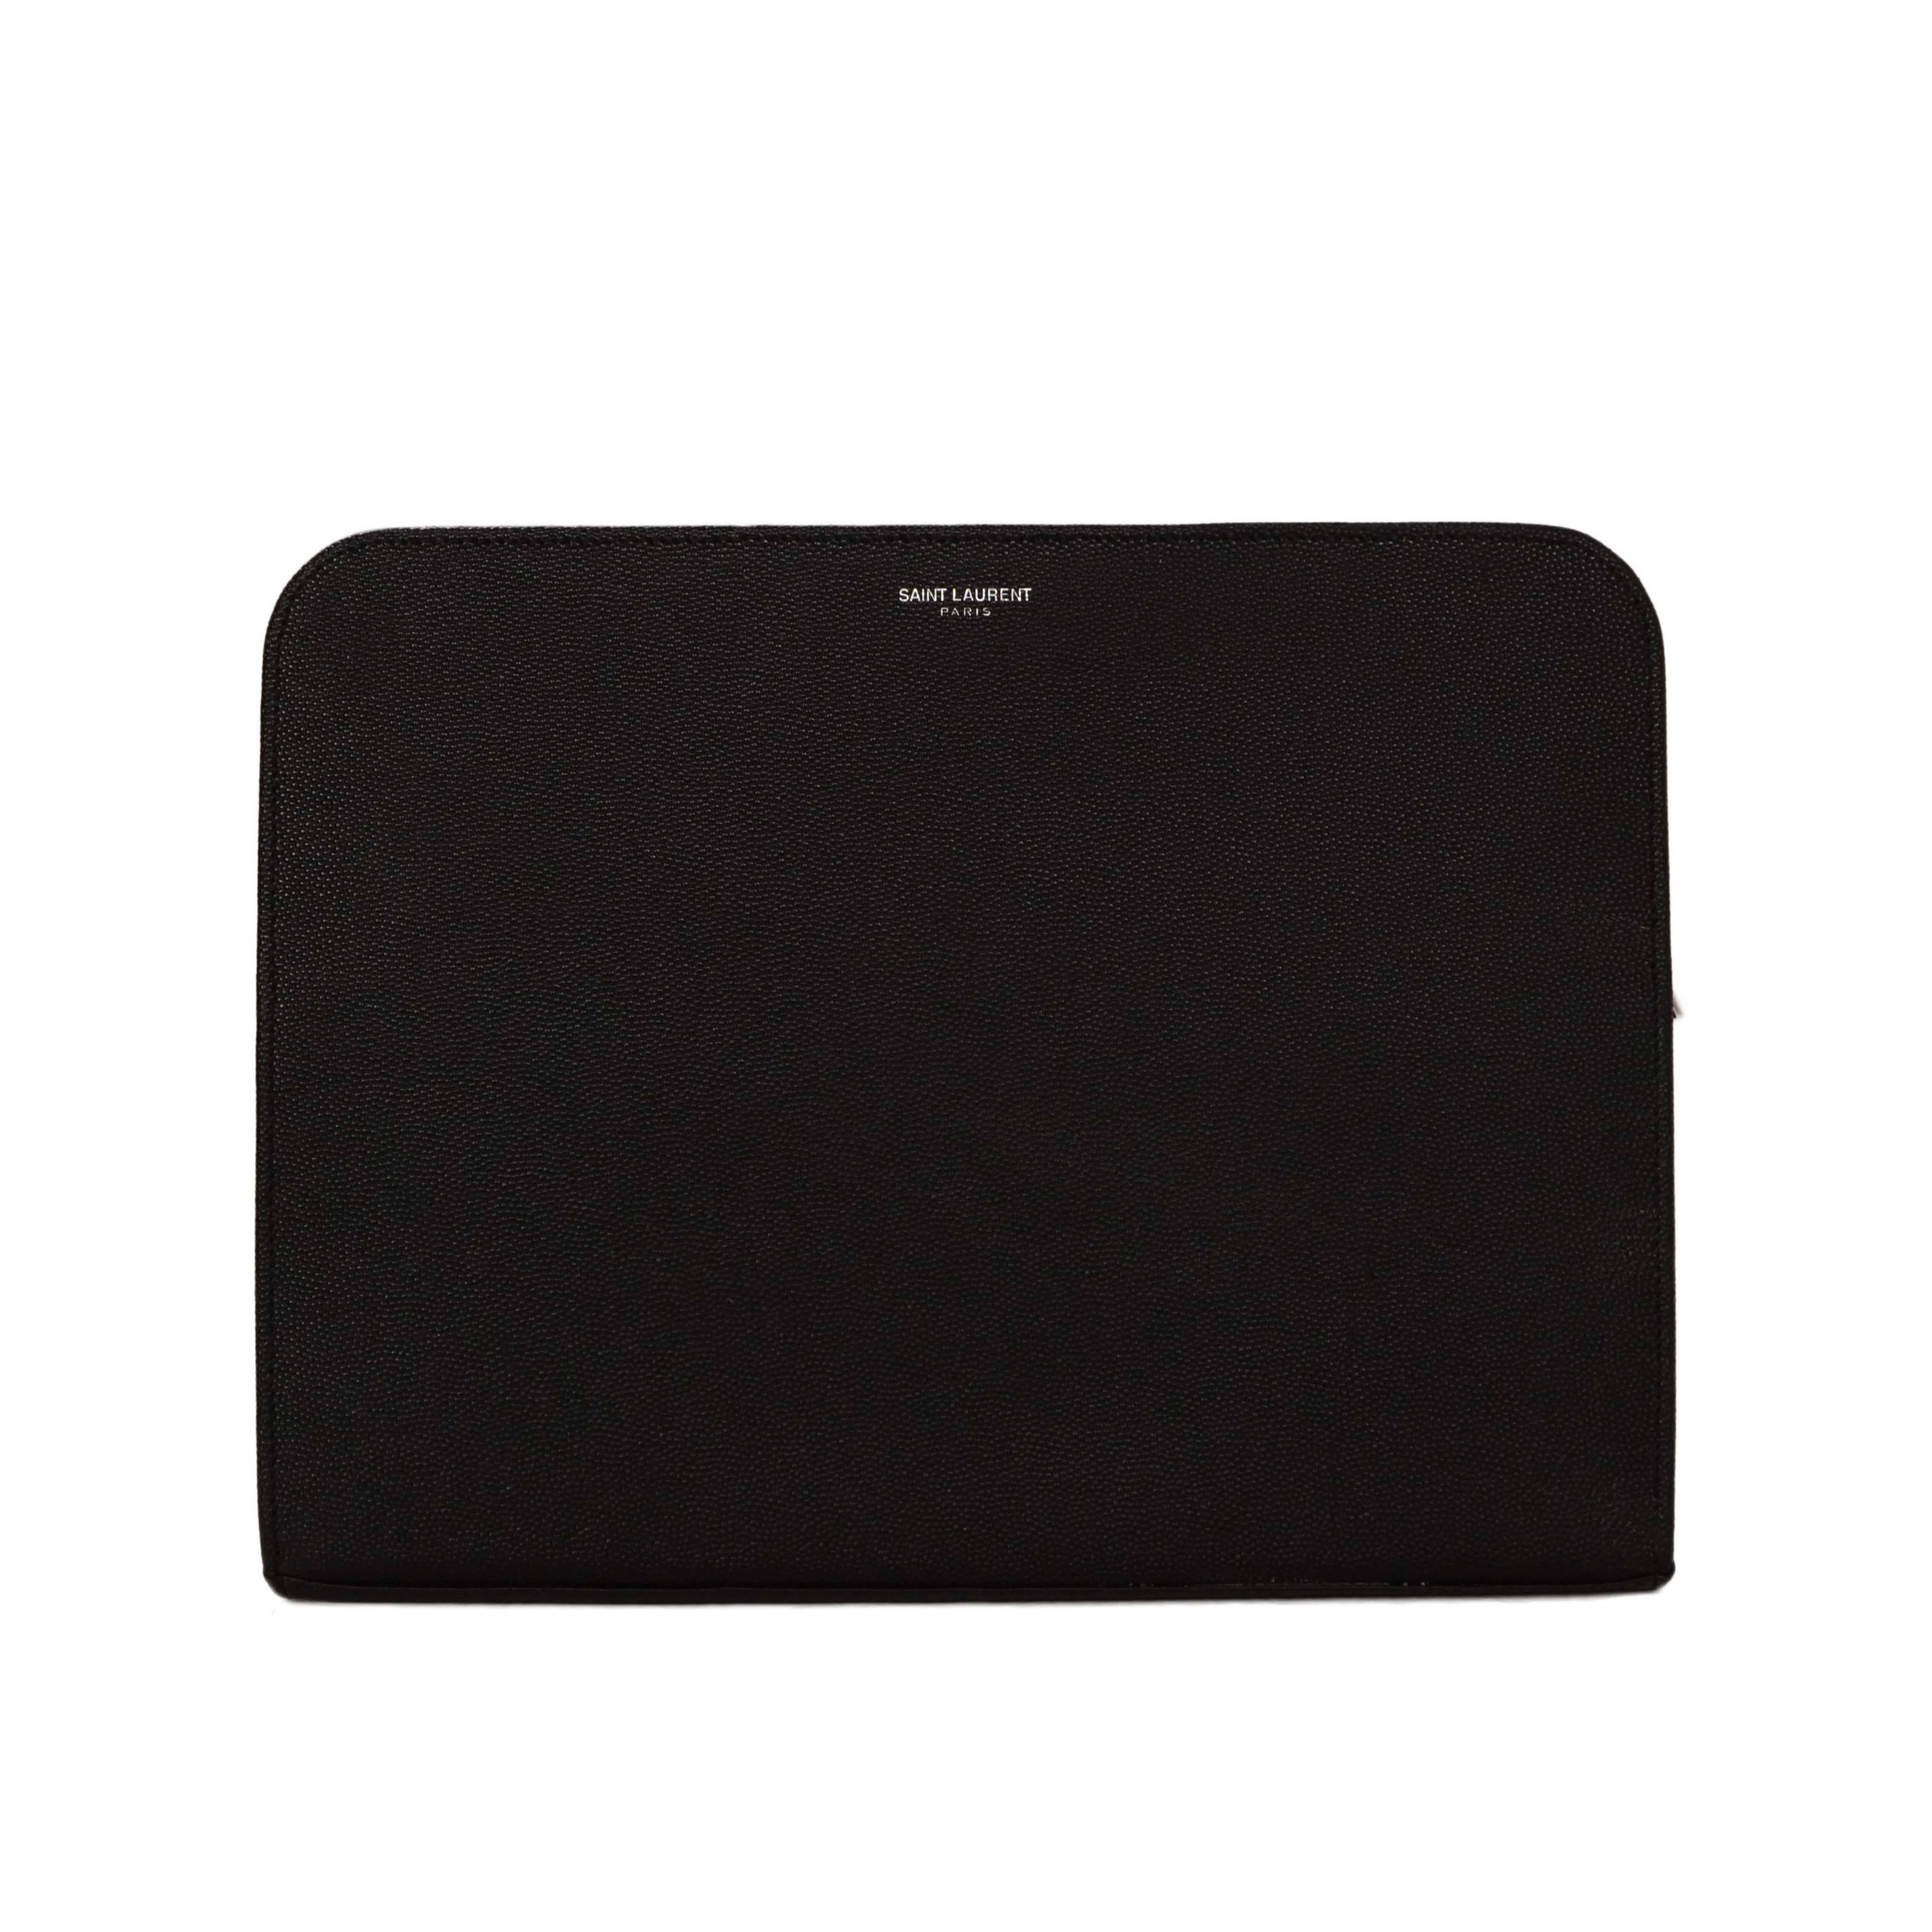 Saint Laurent Black Leather iPad Case/Clutch Bag rt $560